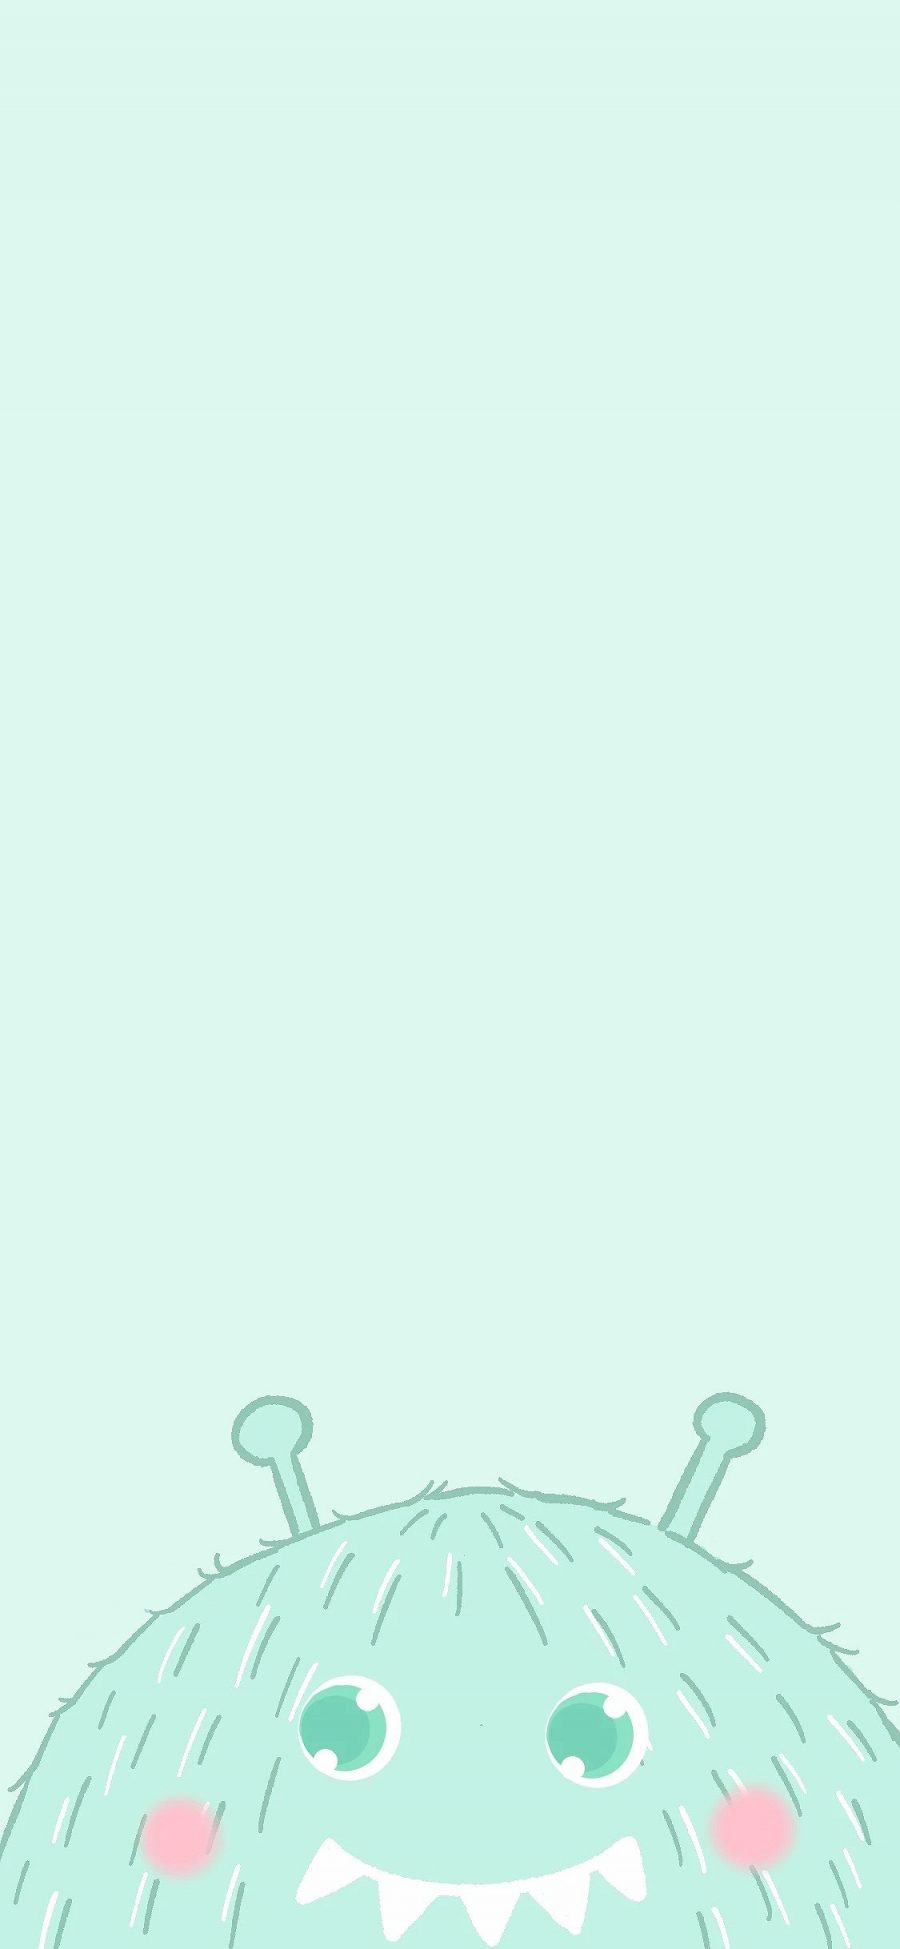 [2436×1125]小怪兽 可爱 绿色 苹果手机动漫壁纸图片